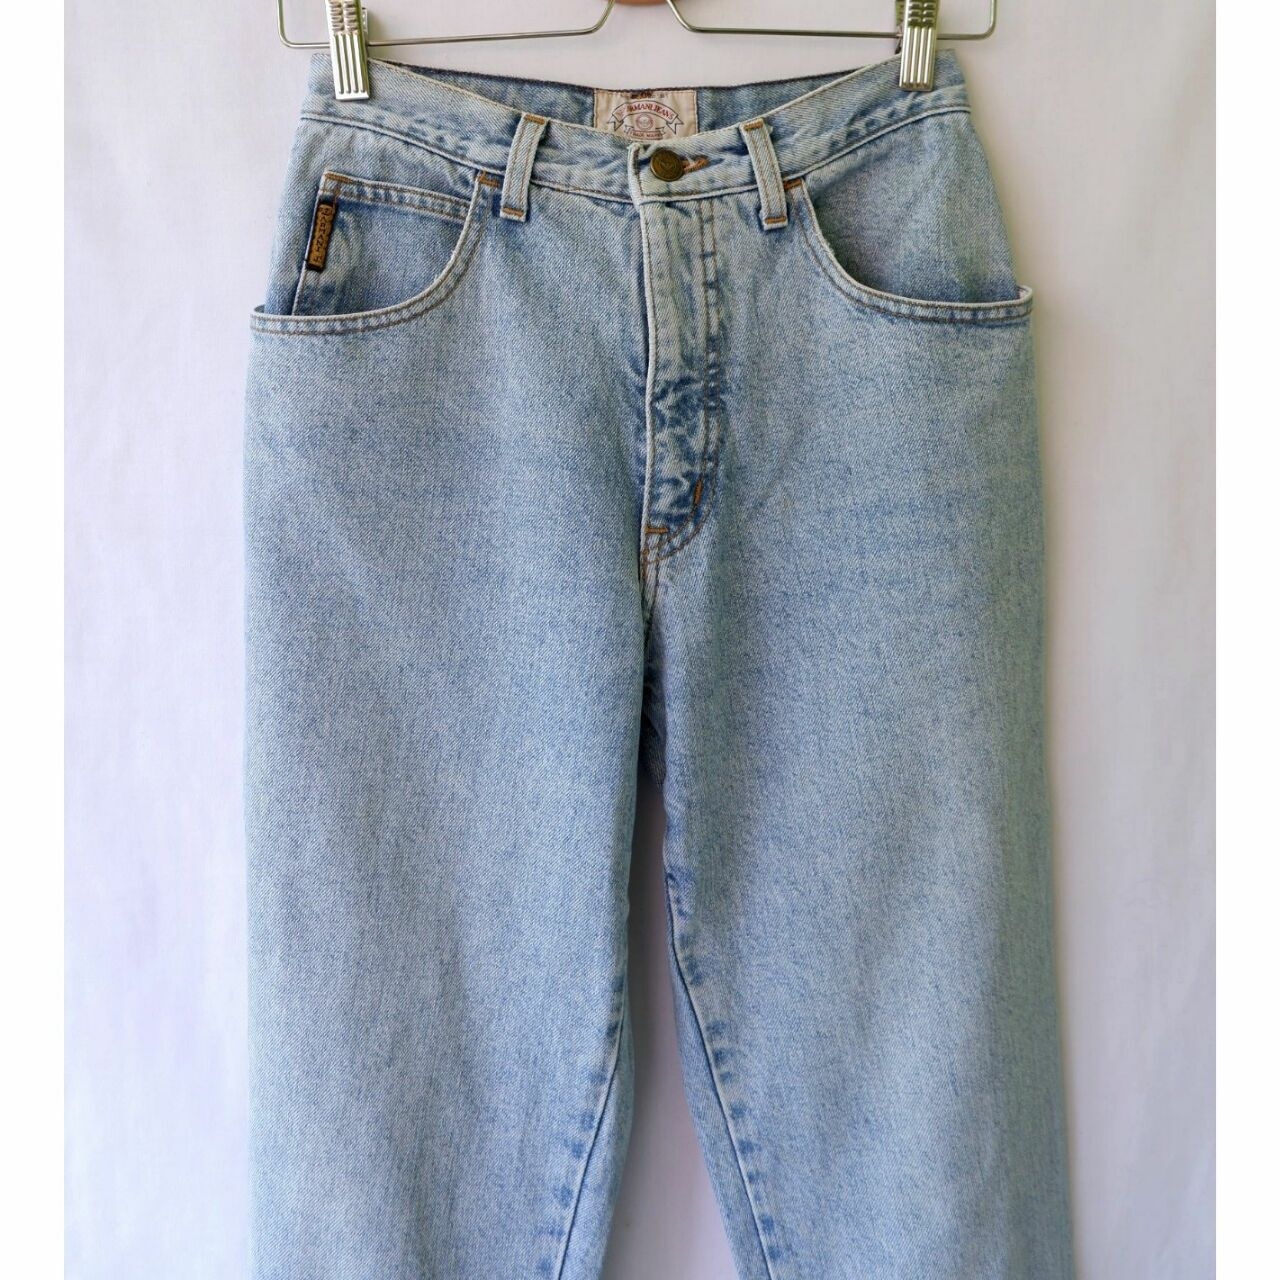 Armani Jeans Blue Highwaist Baggy Jeans Long Pants